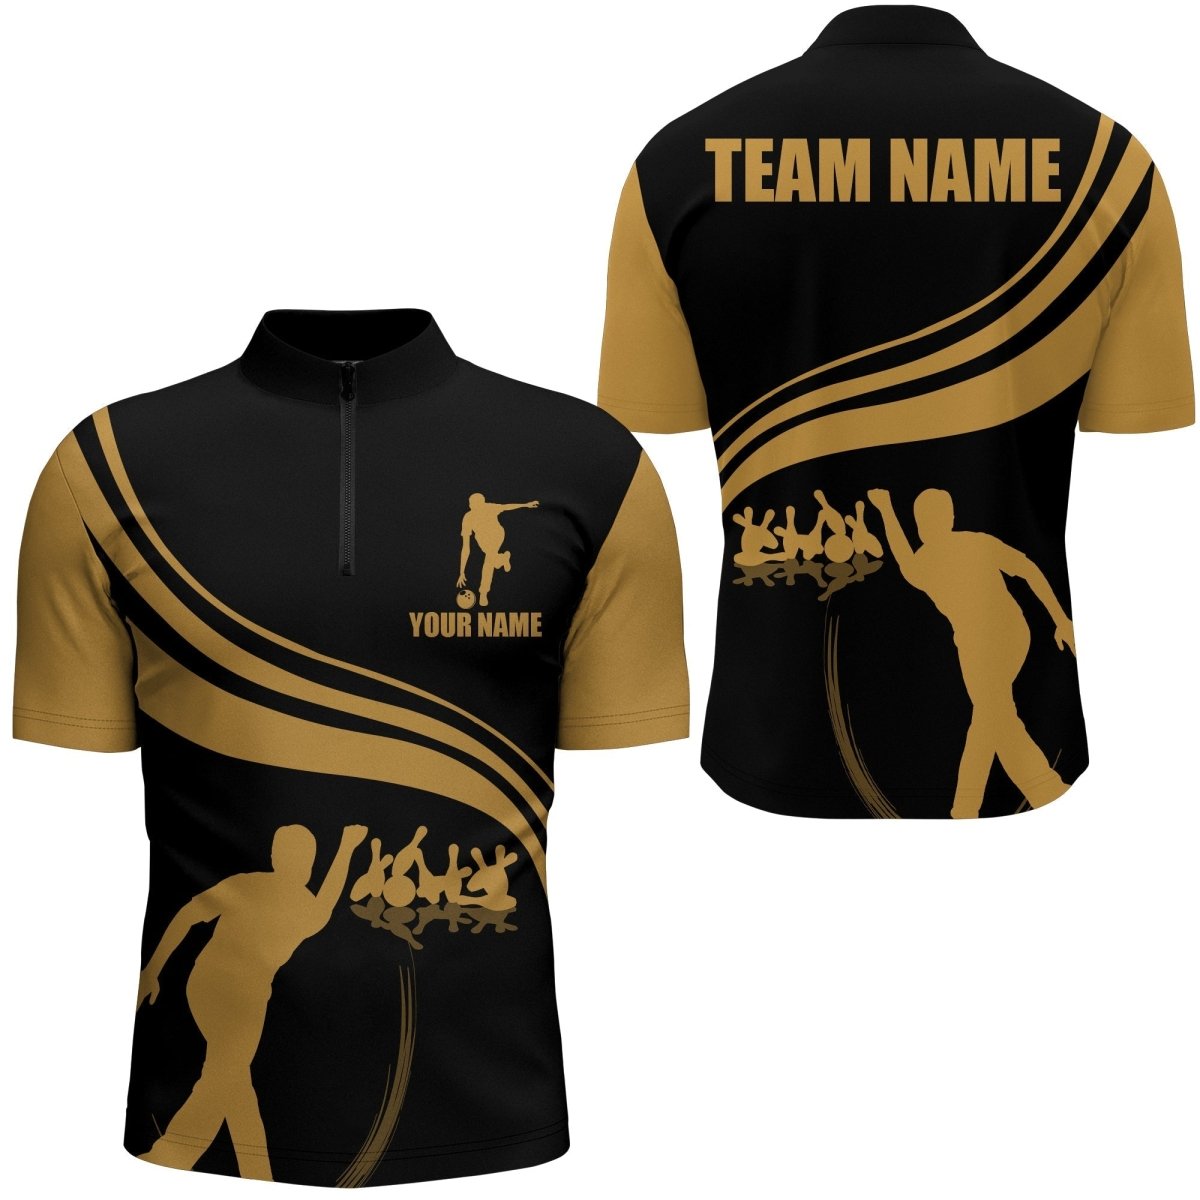 Individuell gestaltetes Bowling-Shirt für Herren, 1/4 Zip Shirt Schwarz und Gold, individuelles Bowling-Team-Trikot für Männer NBZ13 - Climcat